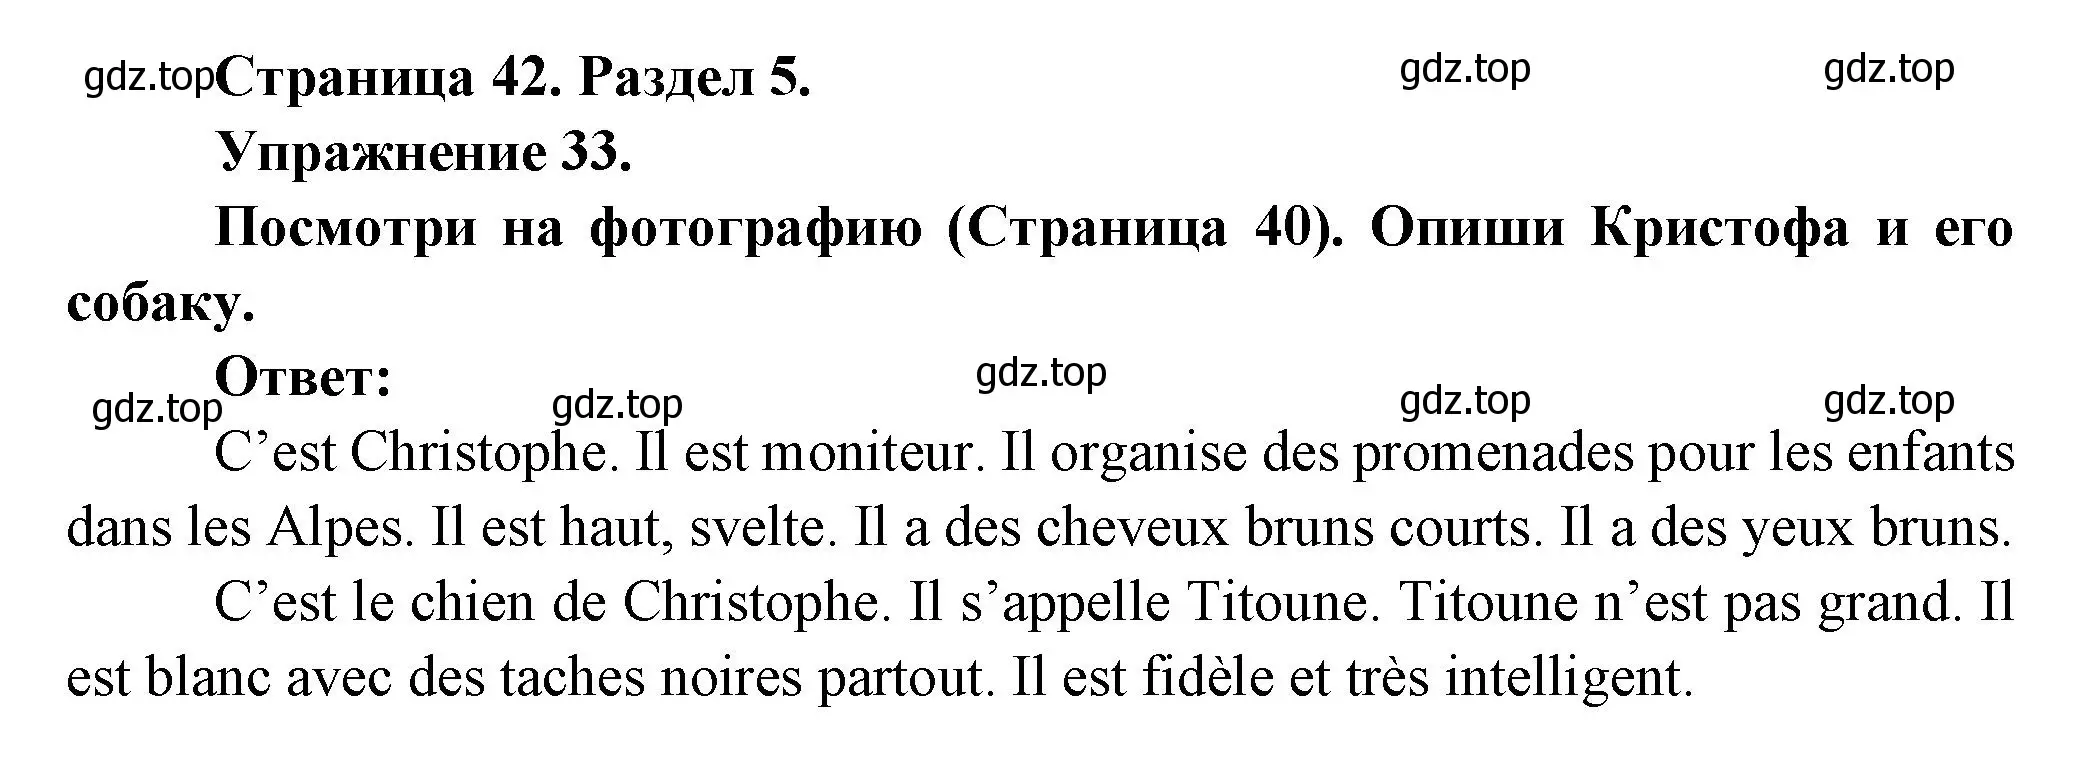 Решение номер 33 (страница 42) гдз по французскому языку 5 класс Береговская, Белосельская, учебник 2 часть